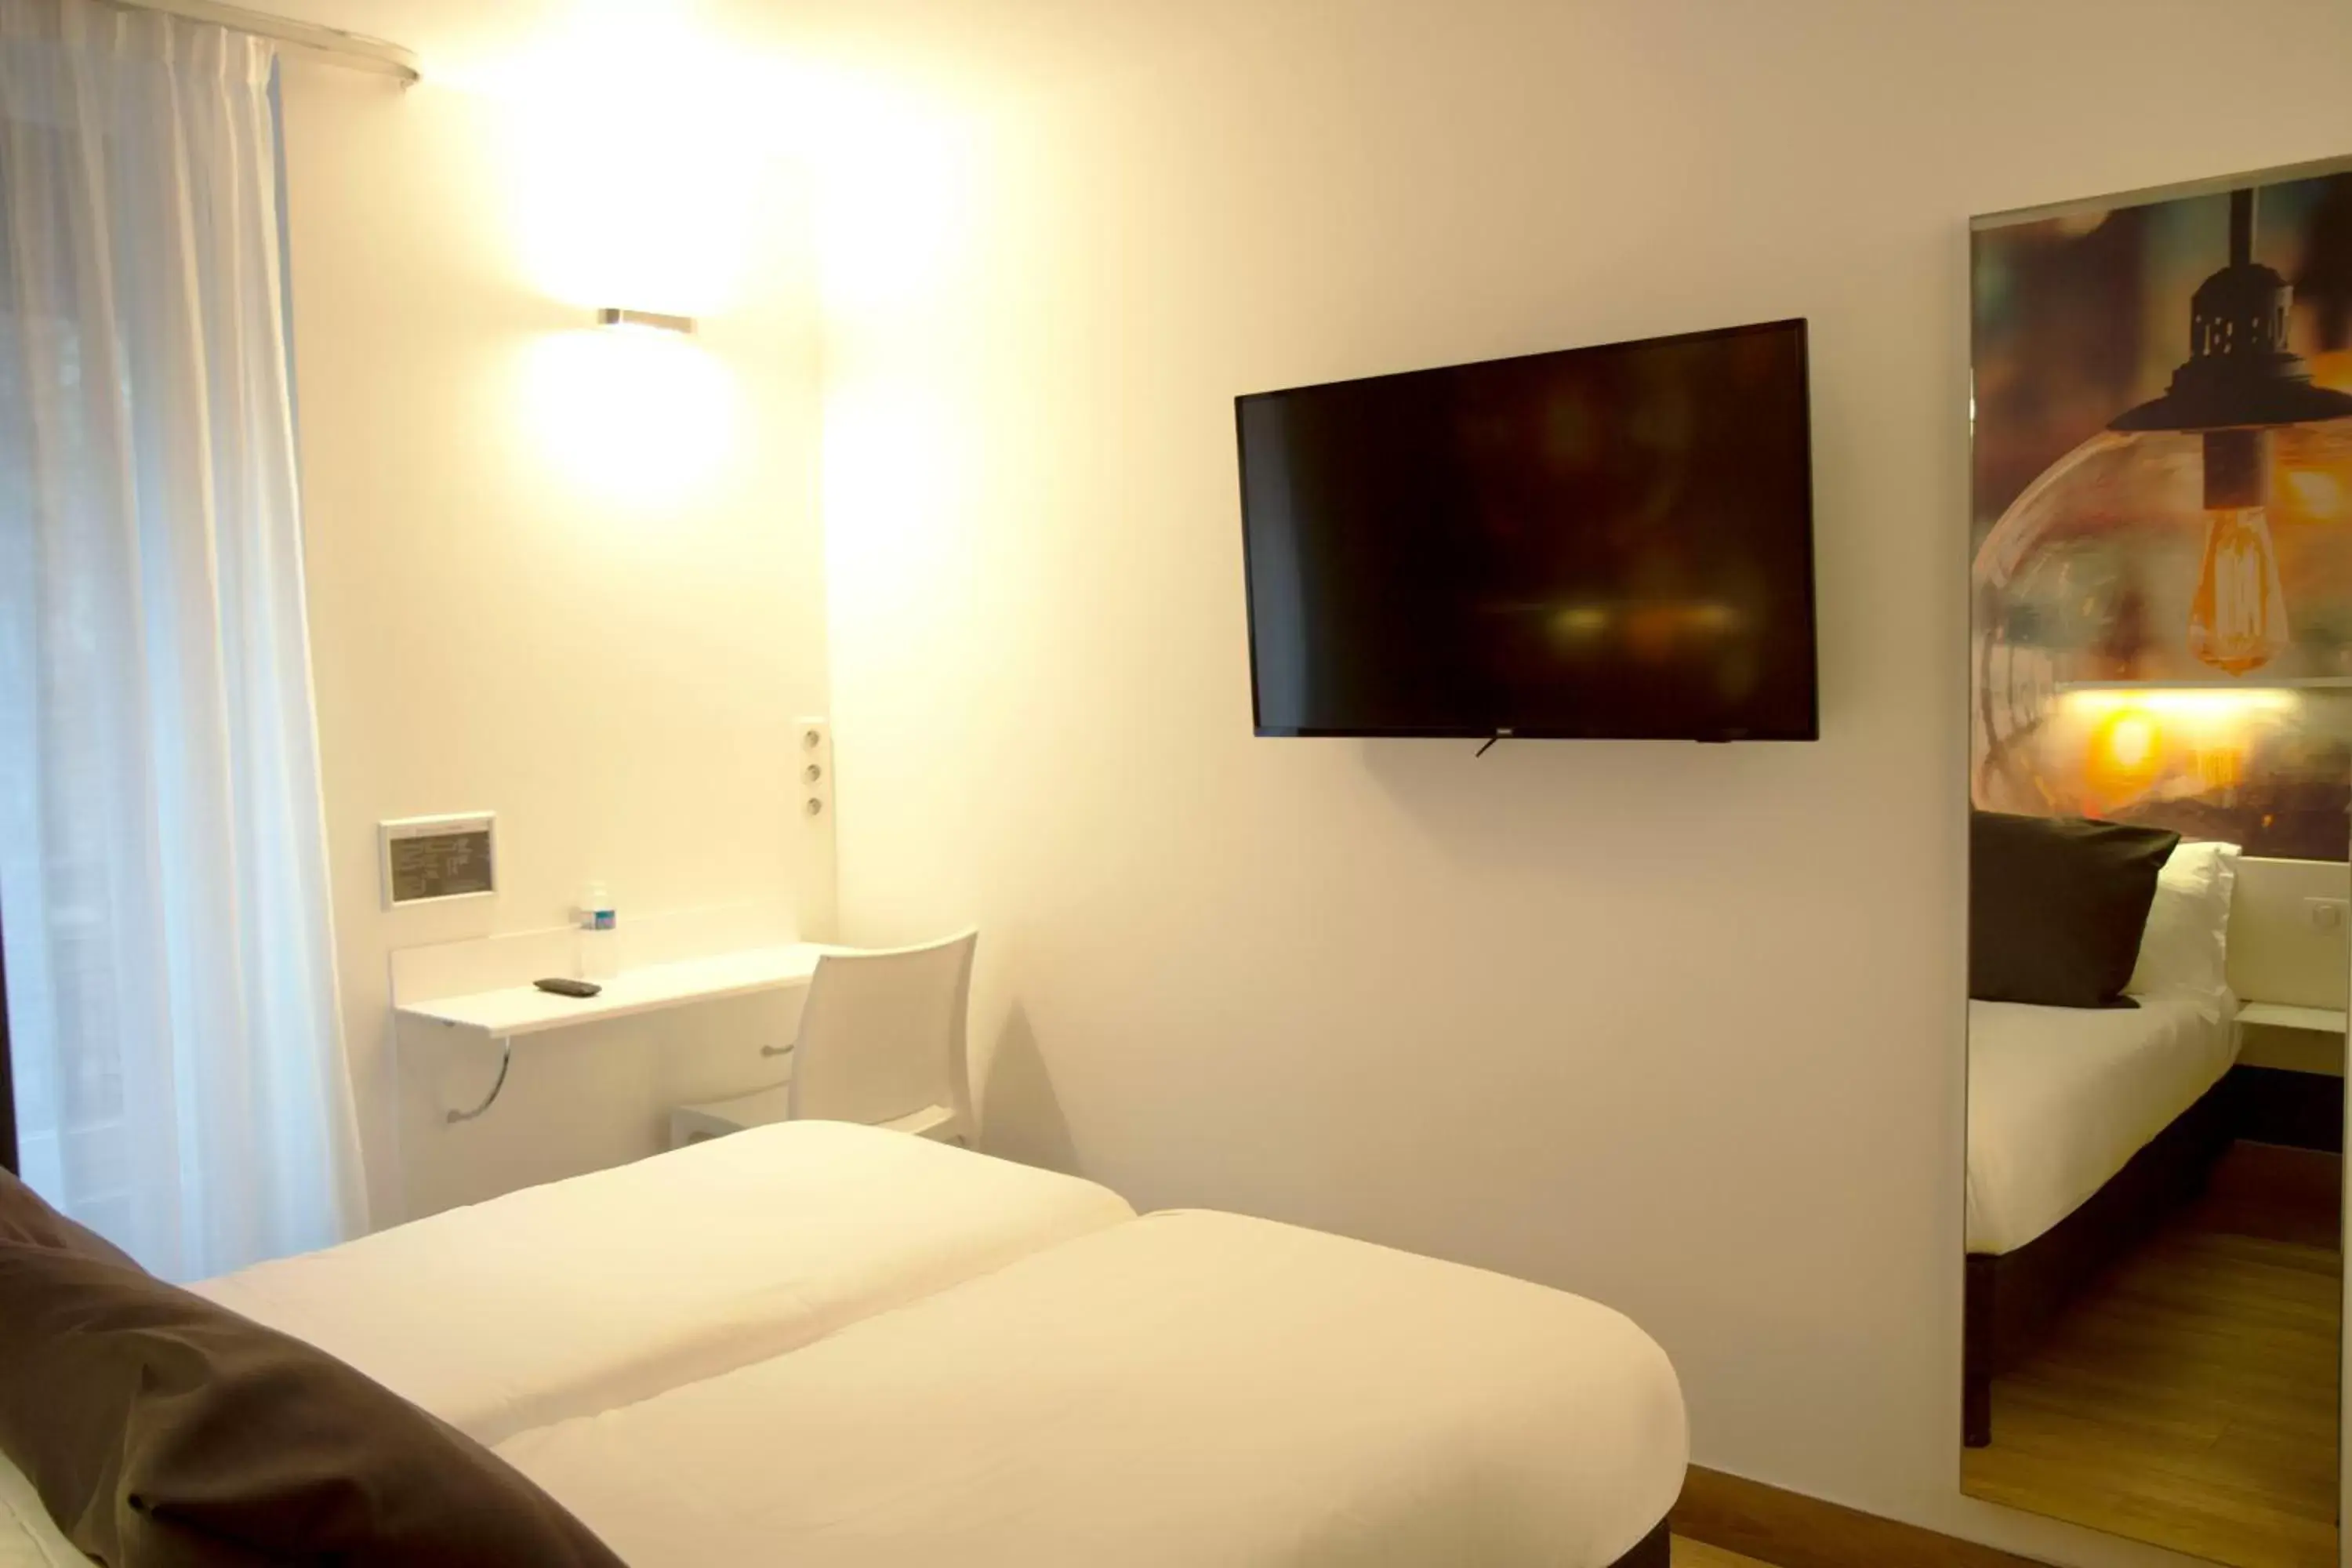 Bedroom, TV/Entertainment Center in Best Western Hotel Le Montparnasse